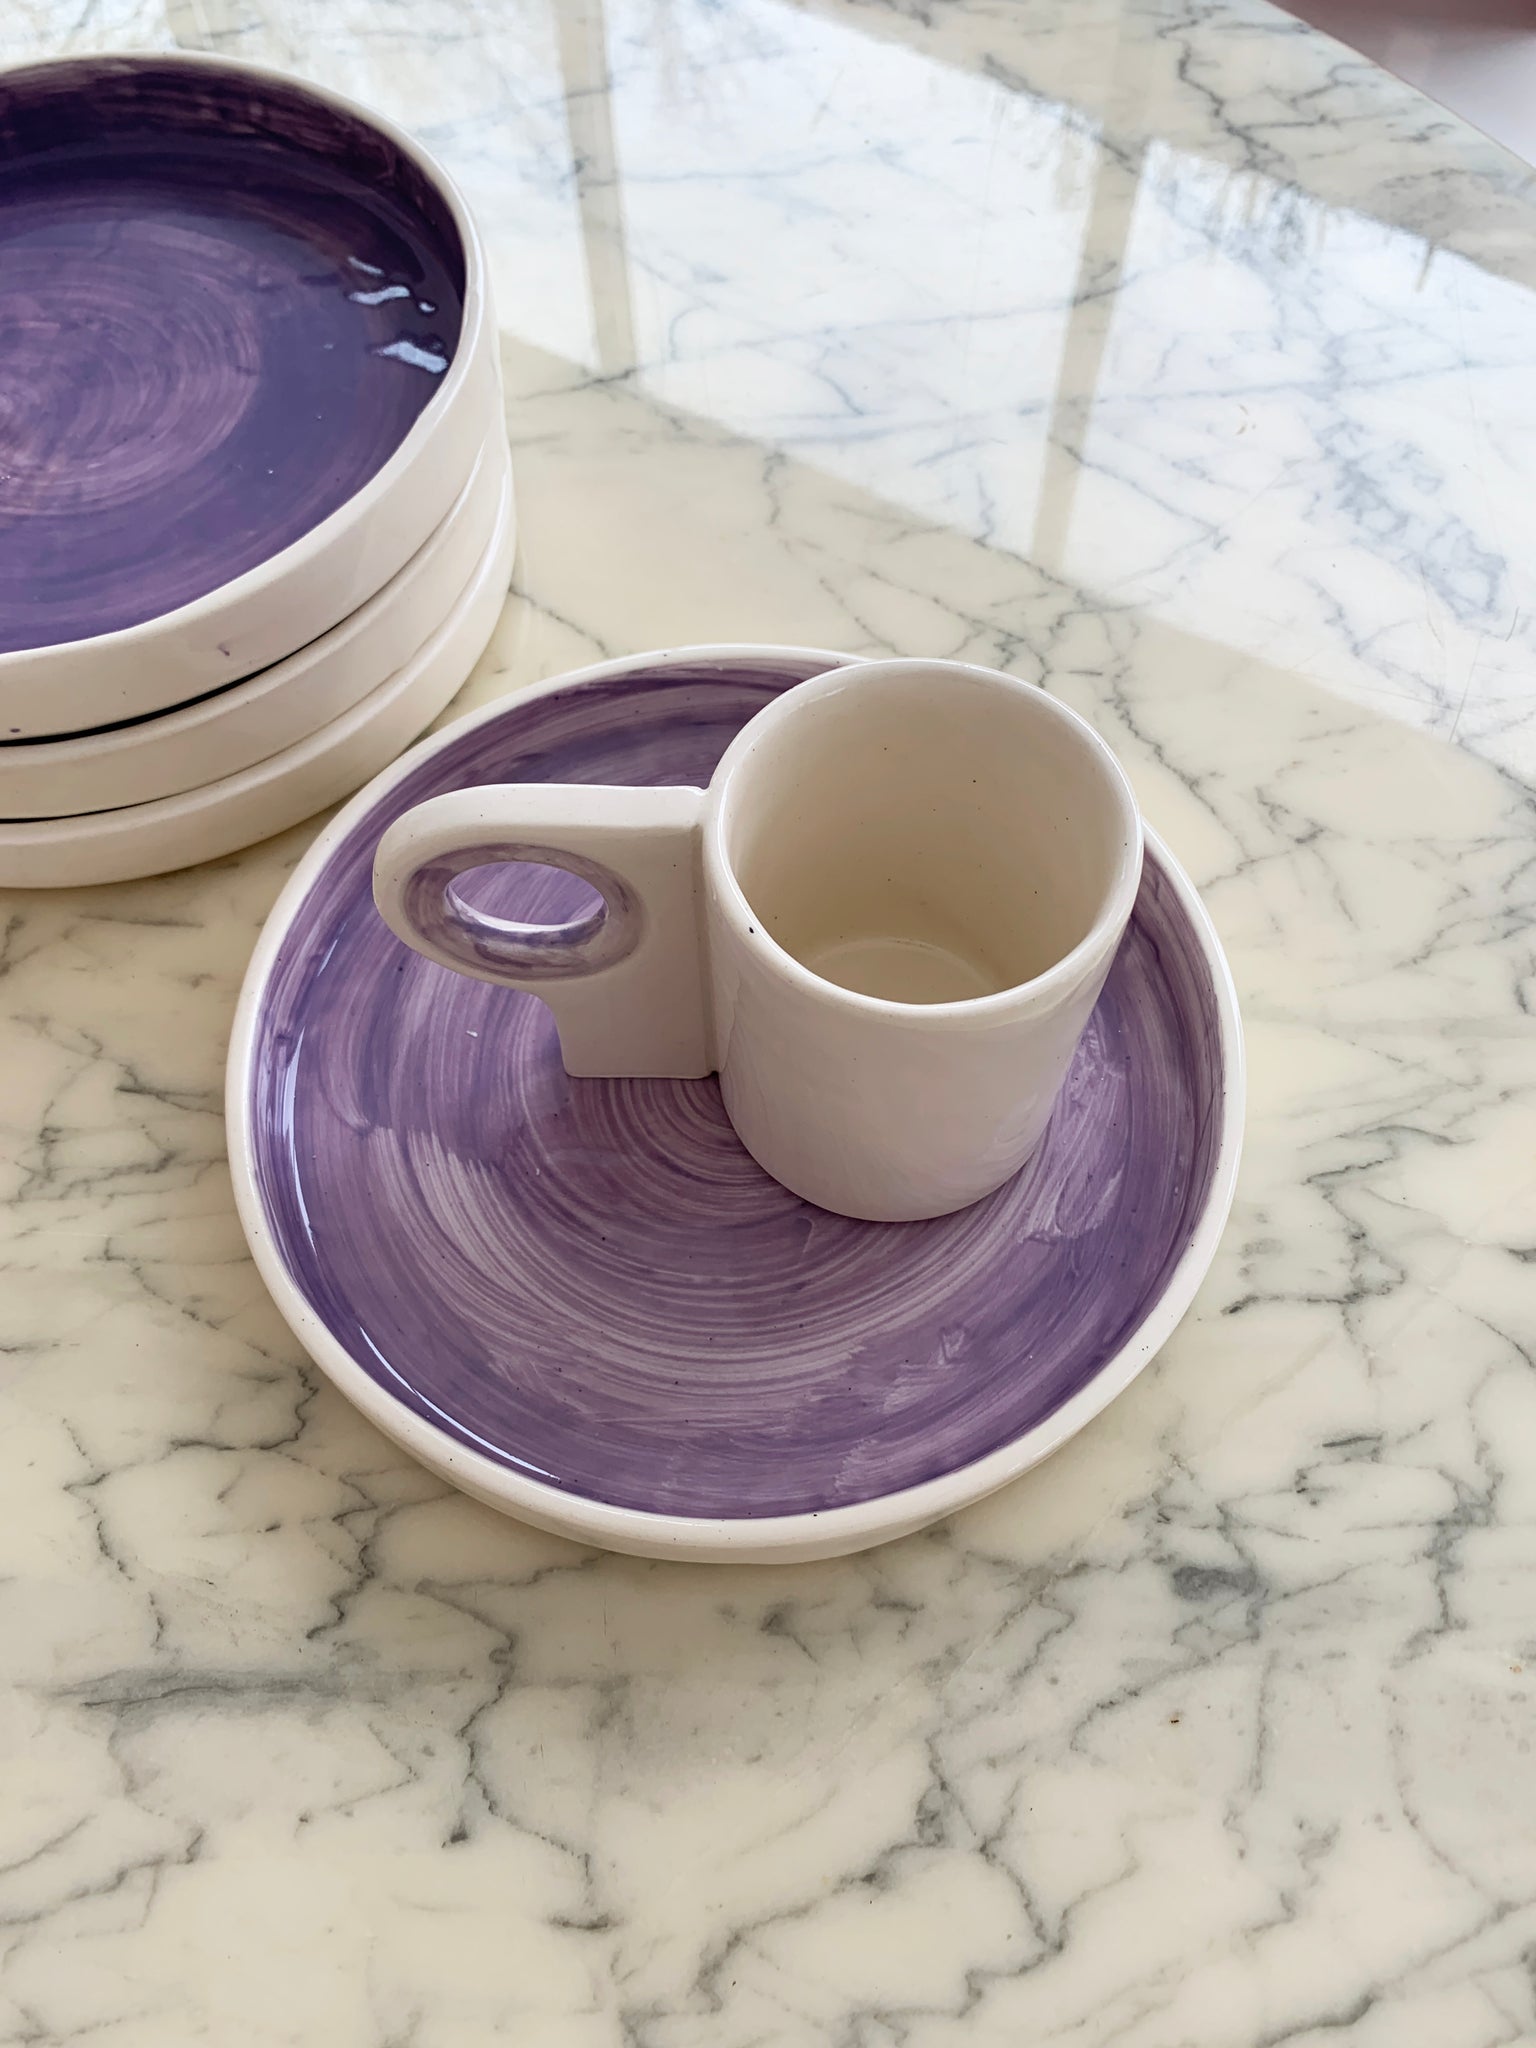 Handmade Glazed ceramic Lavender Dinner Plate